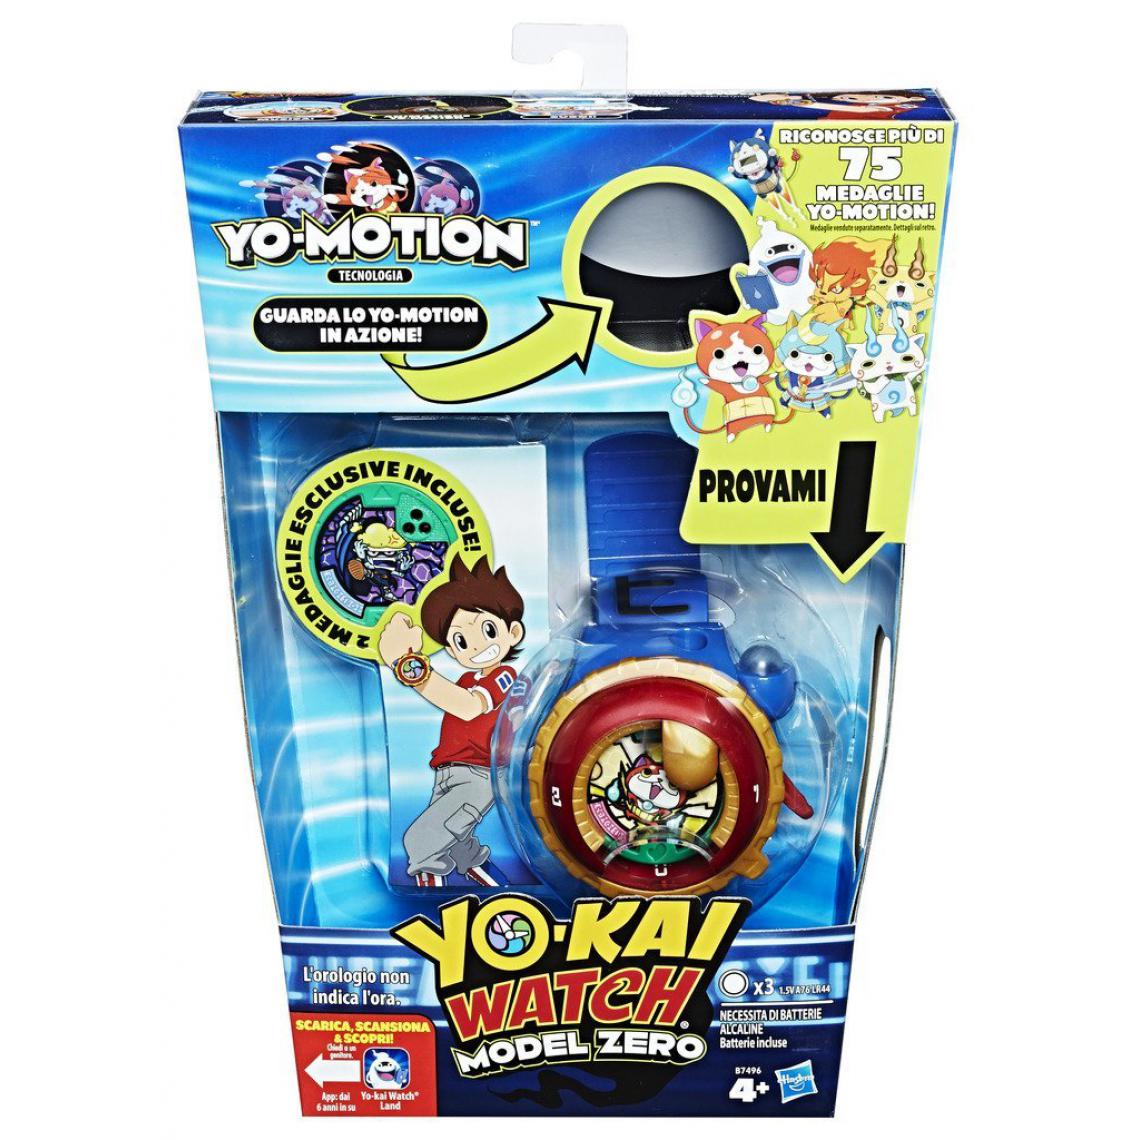 Hasbro - Hasbro Yo-kai Watch Horloge Motion Watch, b7496456 - Montre connectée